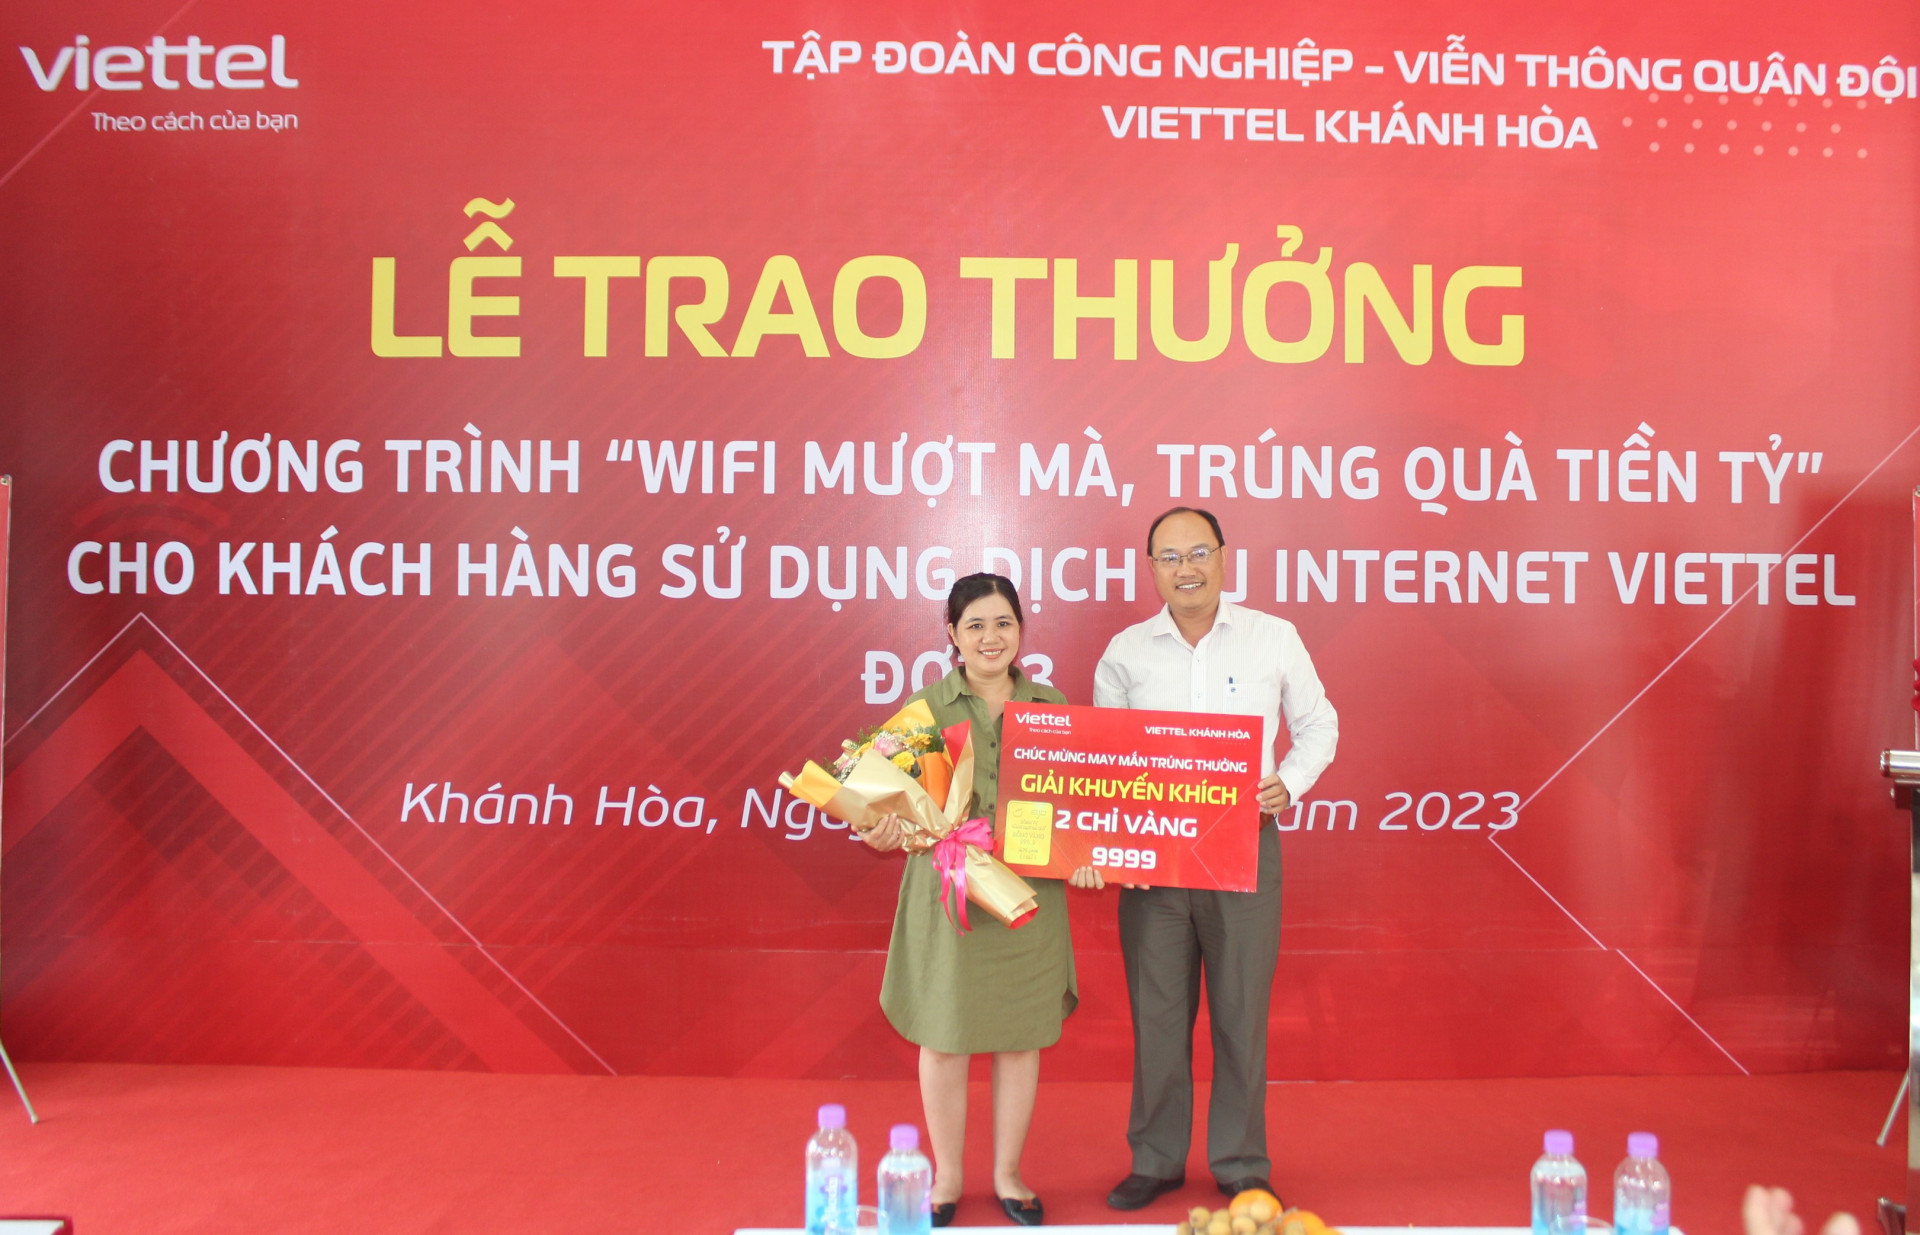 Khách hàng Trần Thị Minh Trang nhận giải khuyến khích.